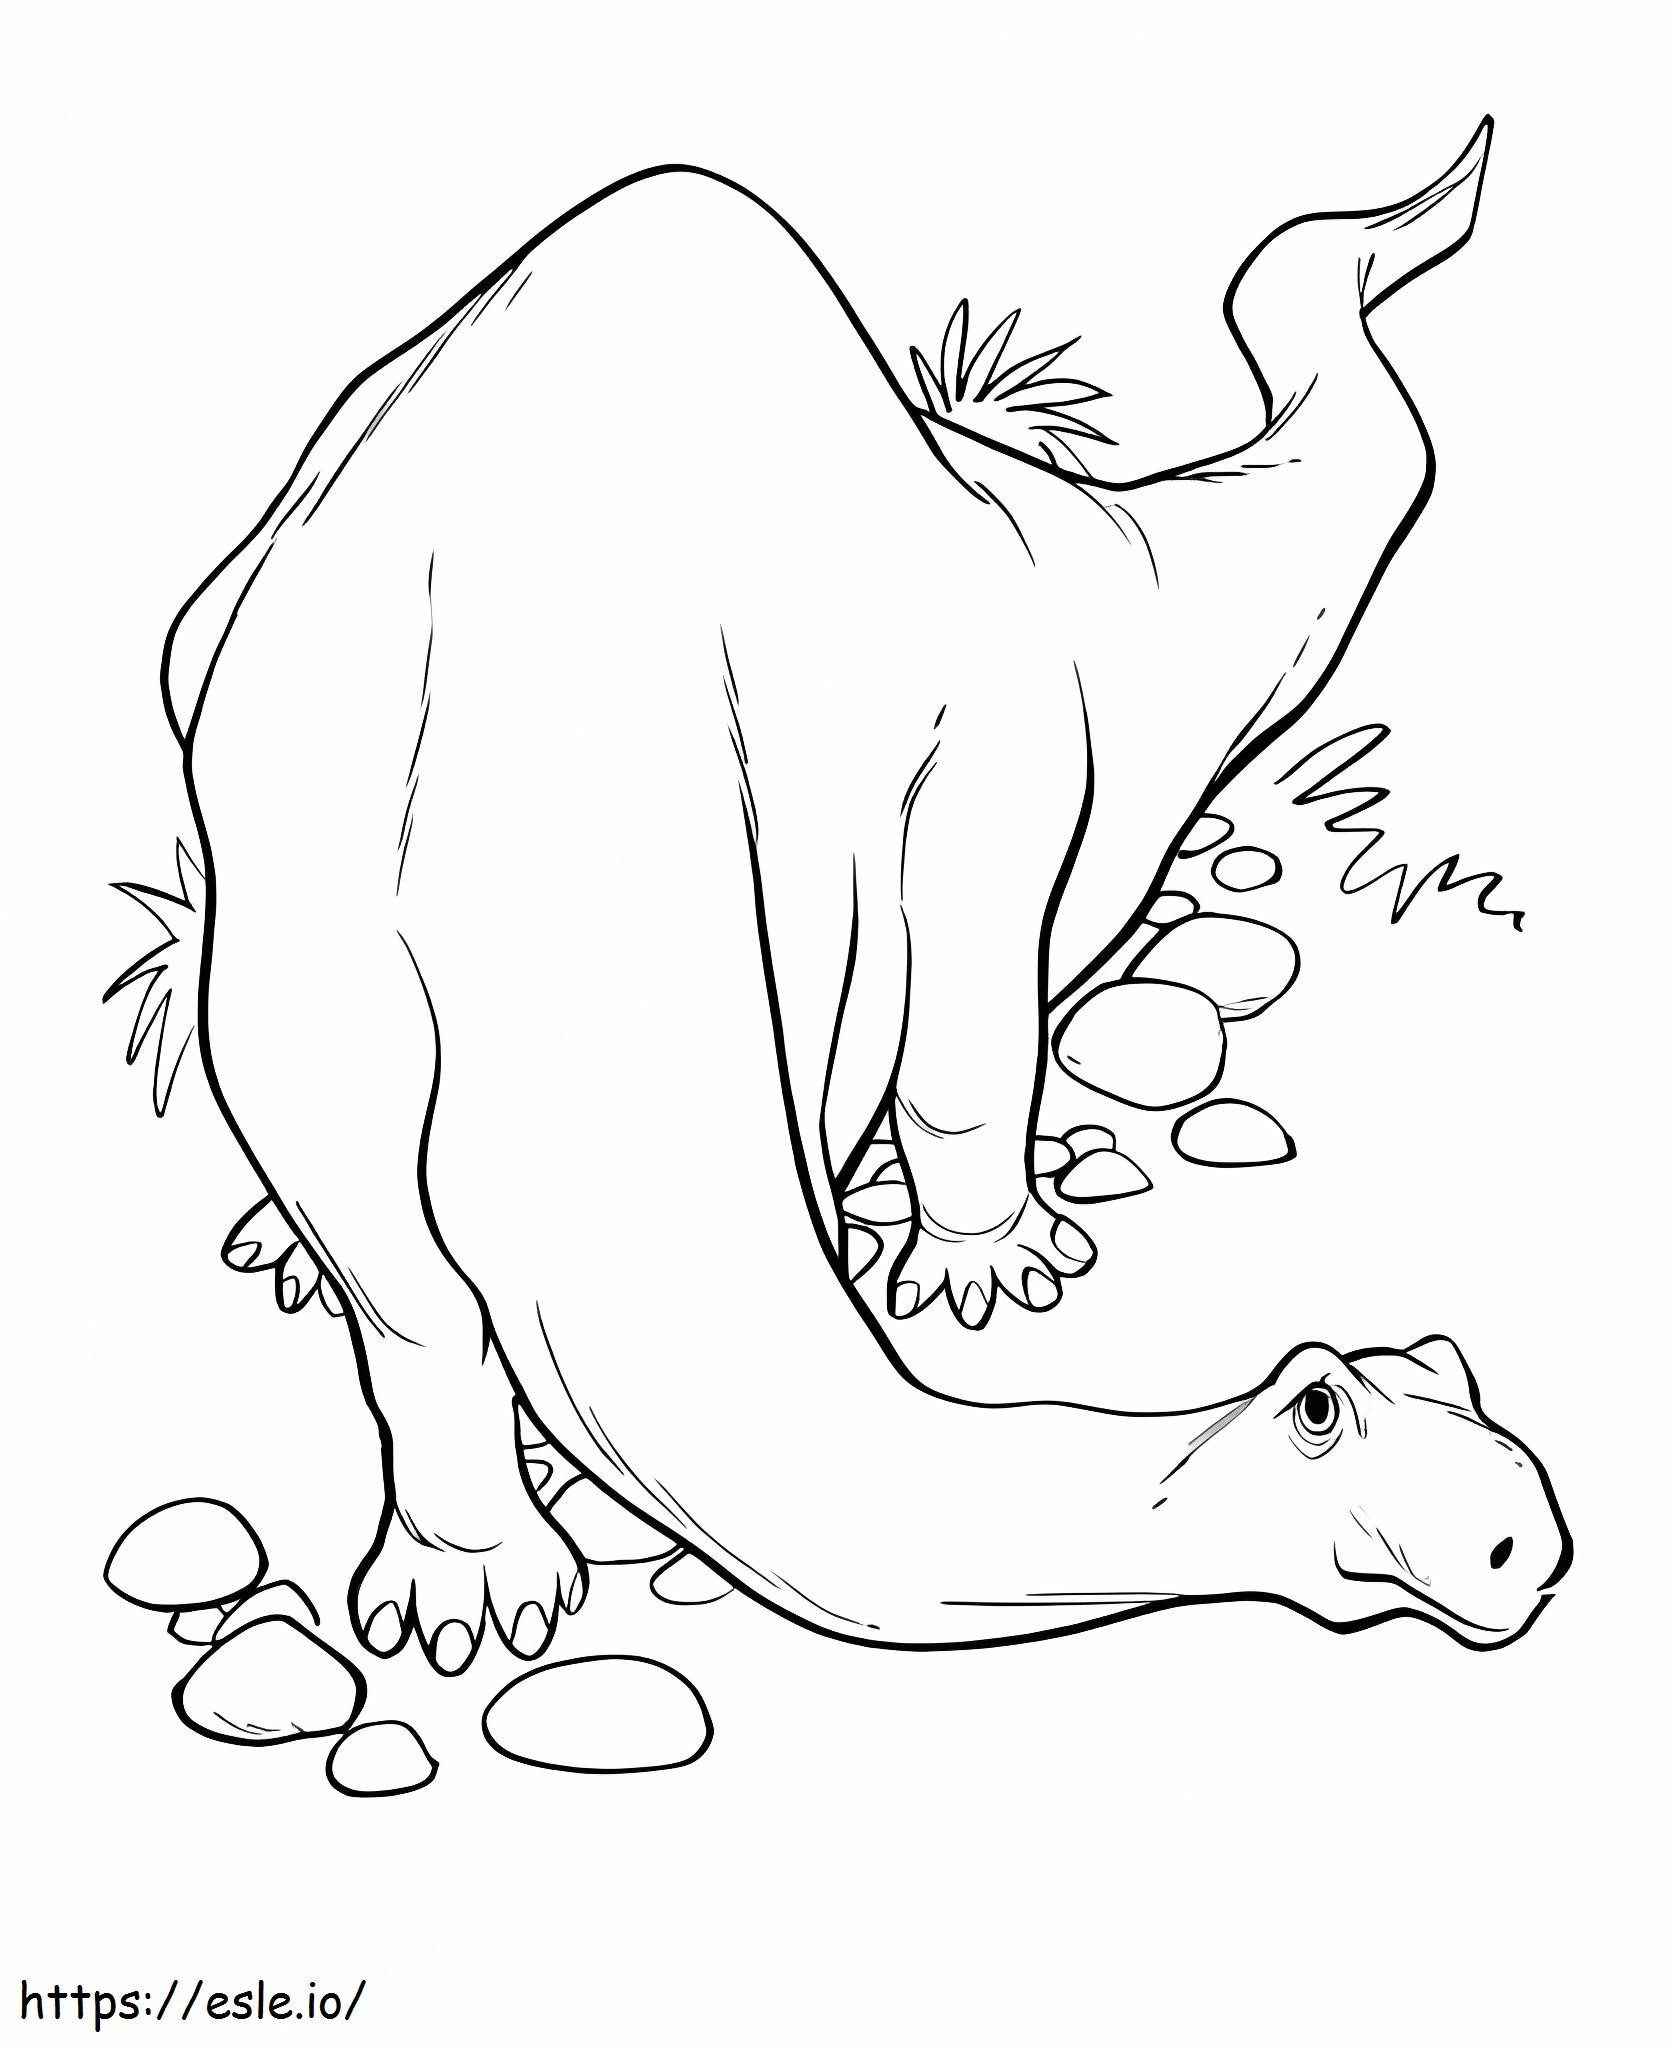 Gehender Brontosaurus ausmalbilder